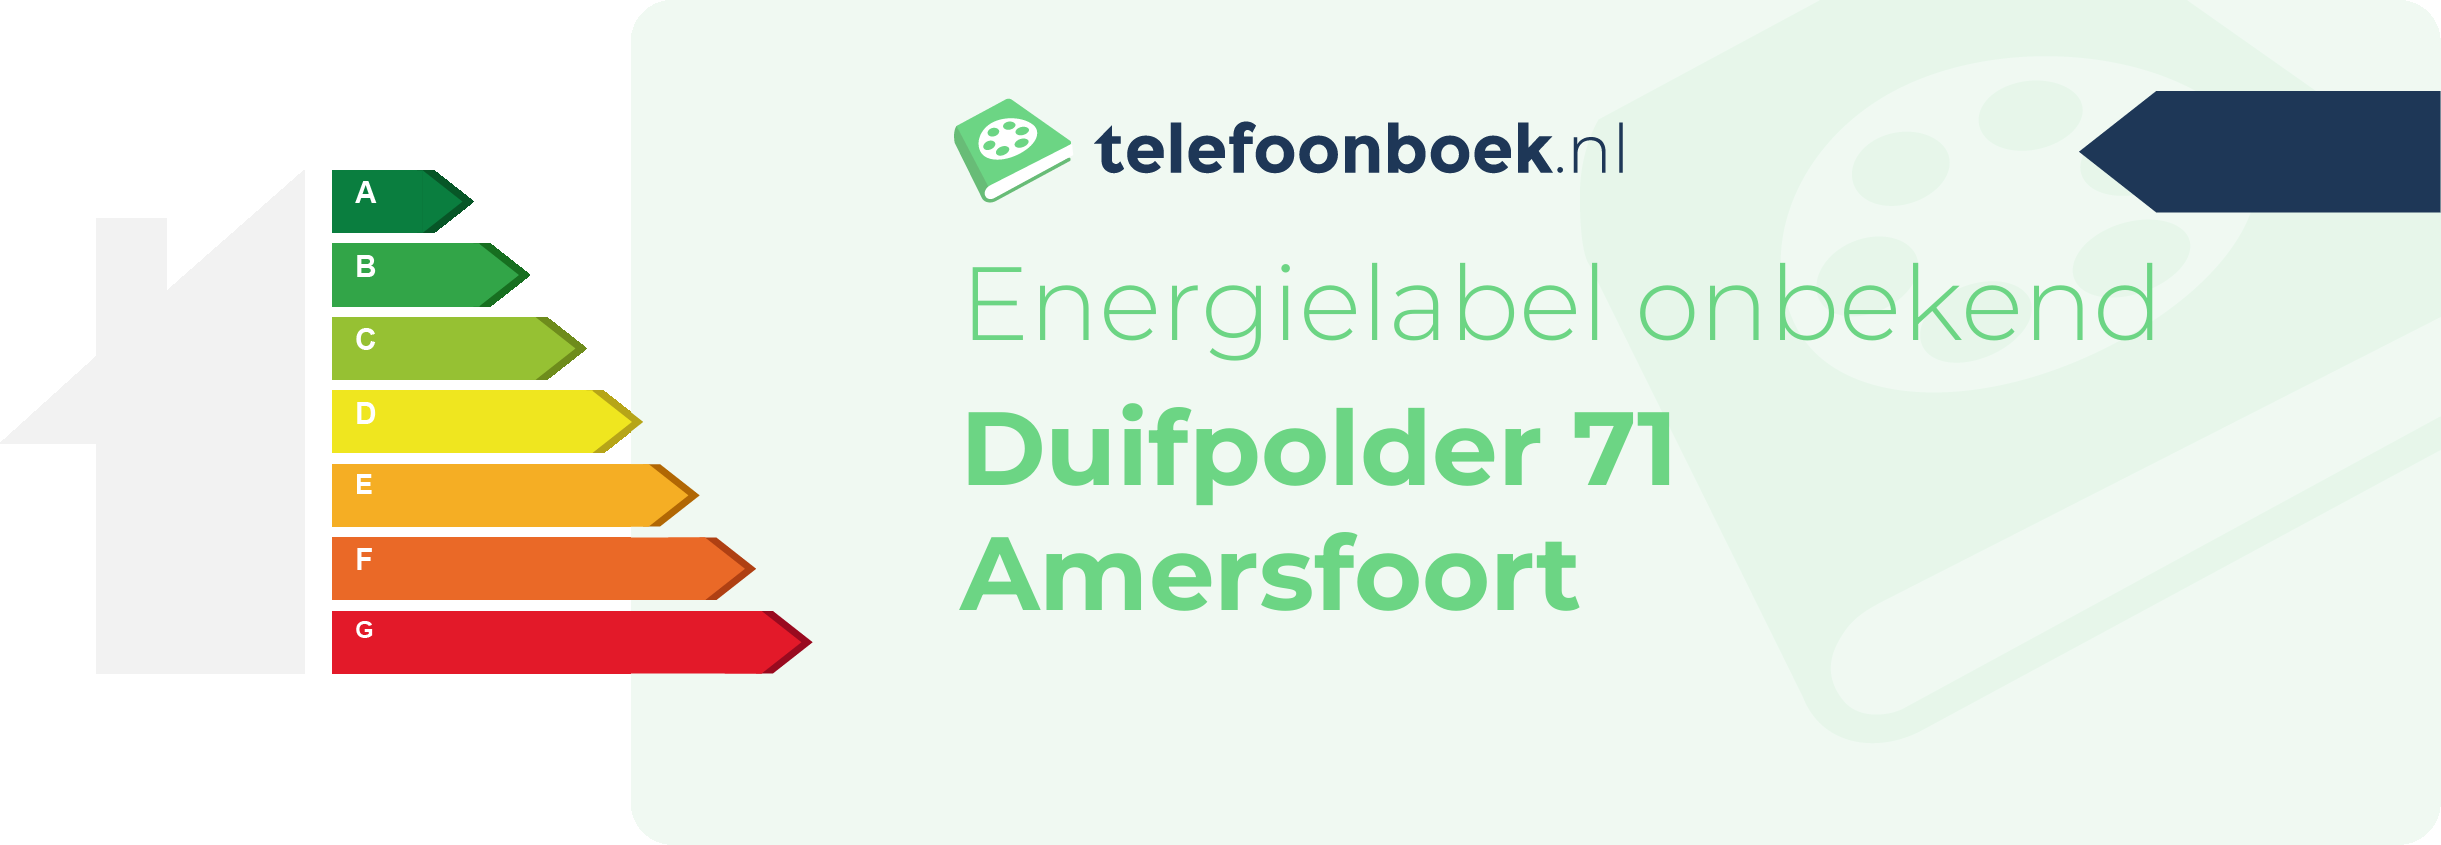 Energielabel Duifpolder 71 Amersfoort